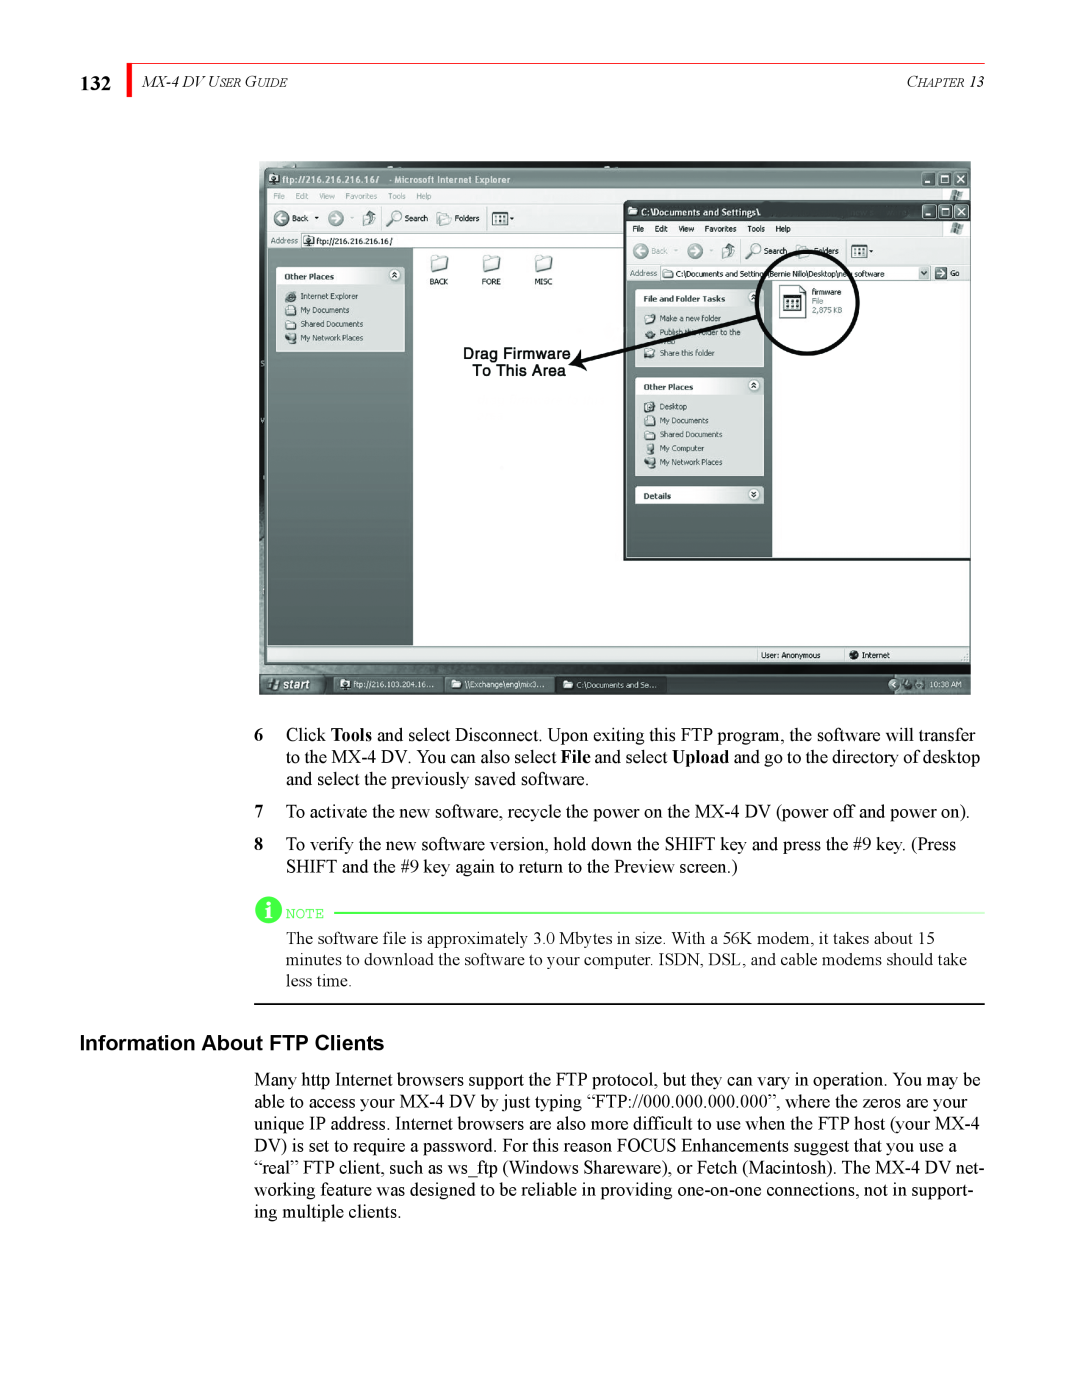 FOCUS Enhancements MX-4DV manual Information About FTP Clients 